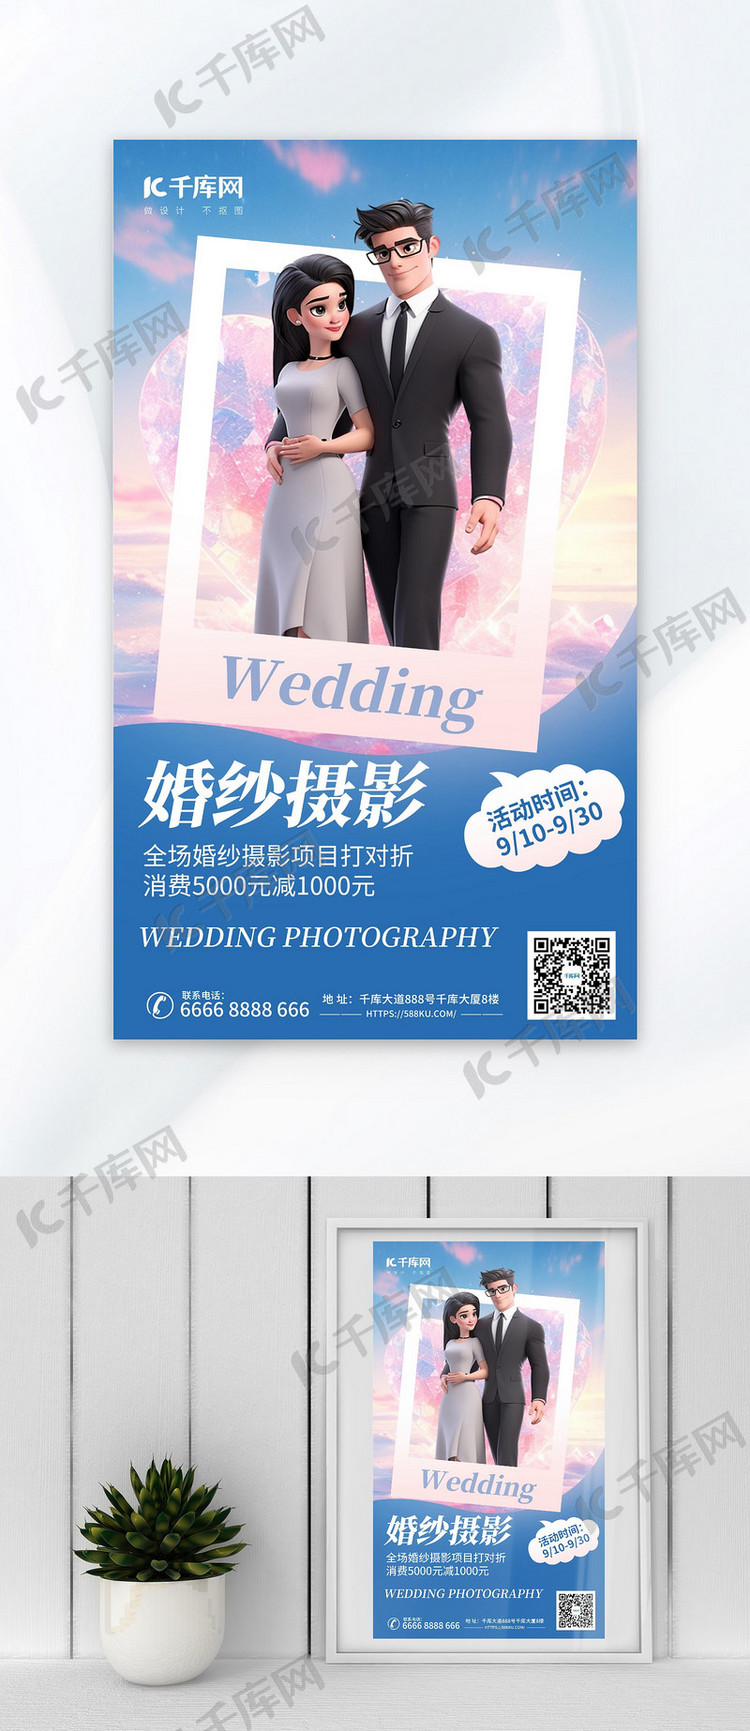 婚纱摄影婚庆服务浅色AIGC模板广告营销海报